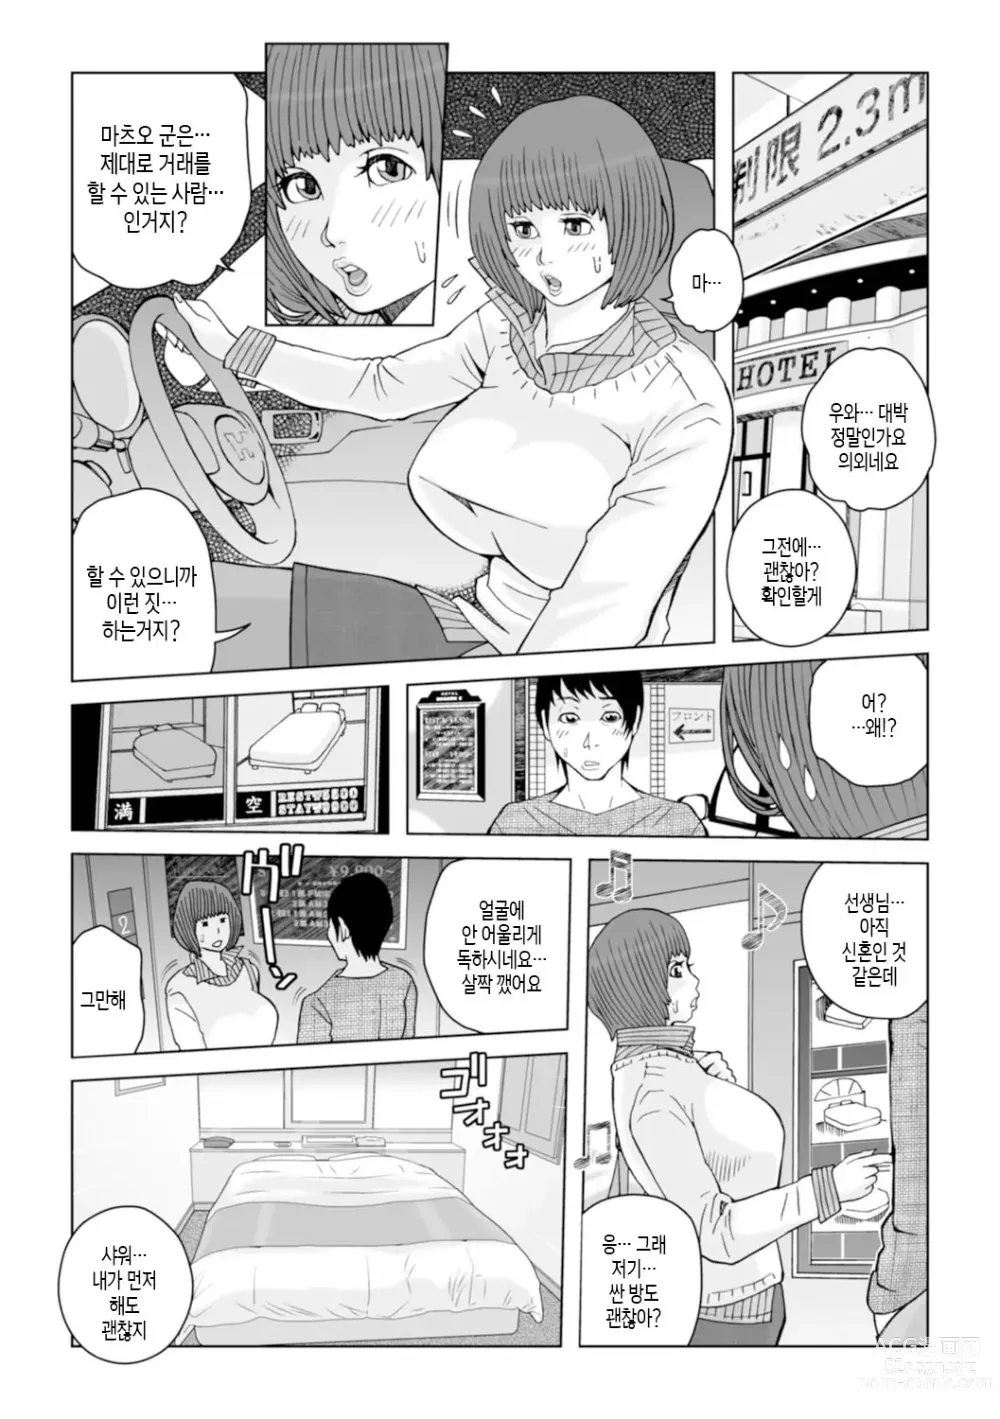 Page 98 of manga 엄마들... 임신시켜도 돼!? 제1권 중 일부